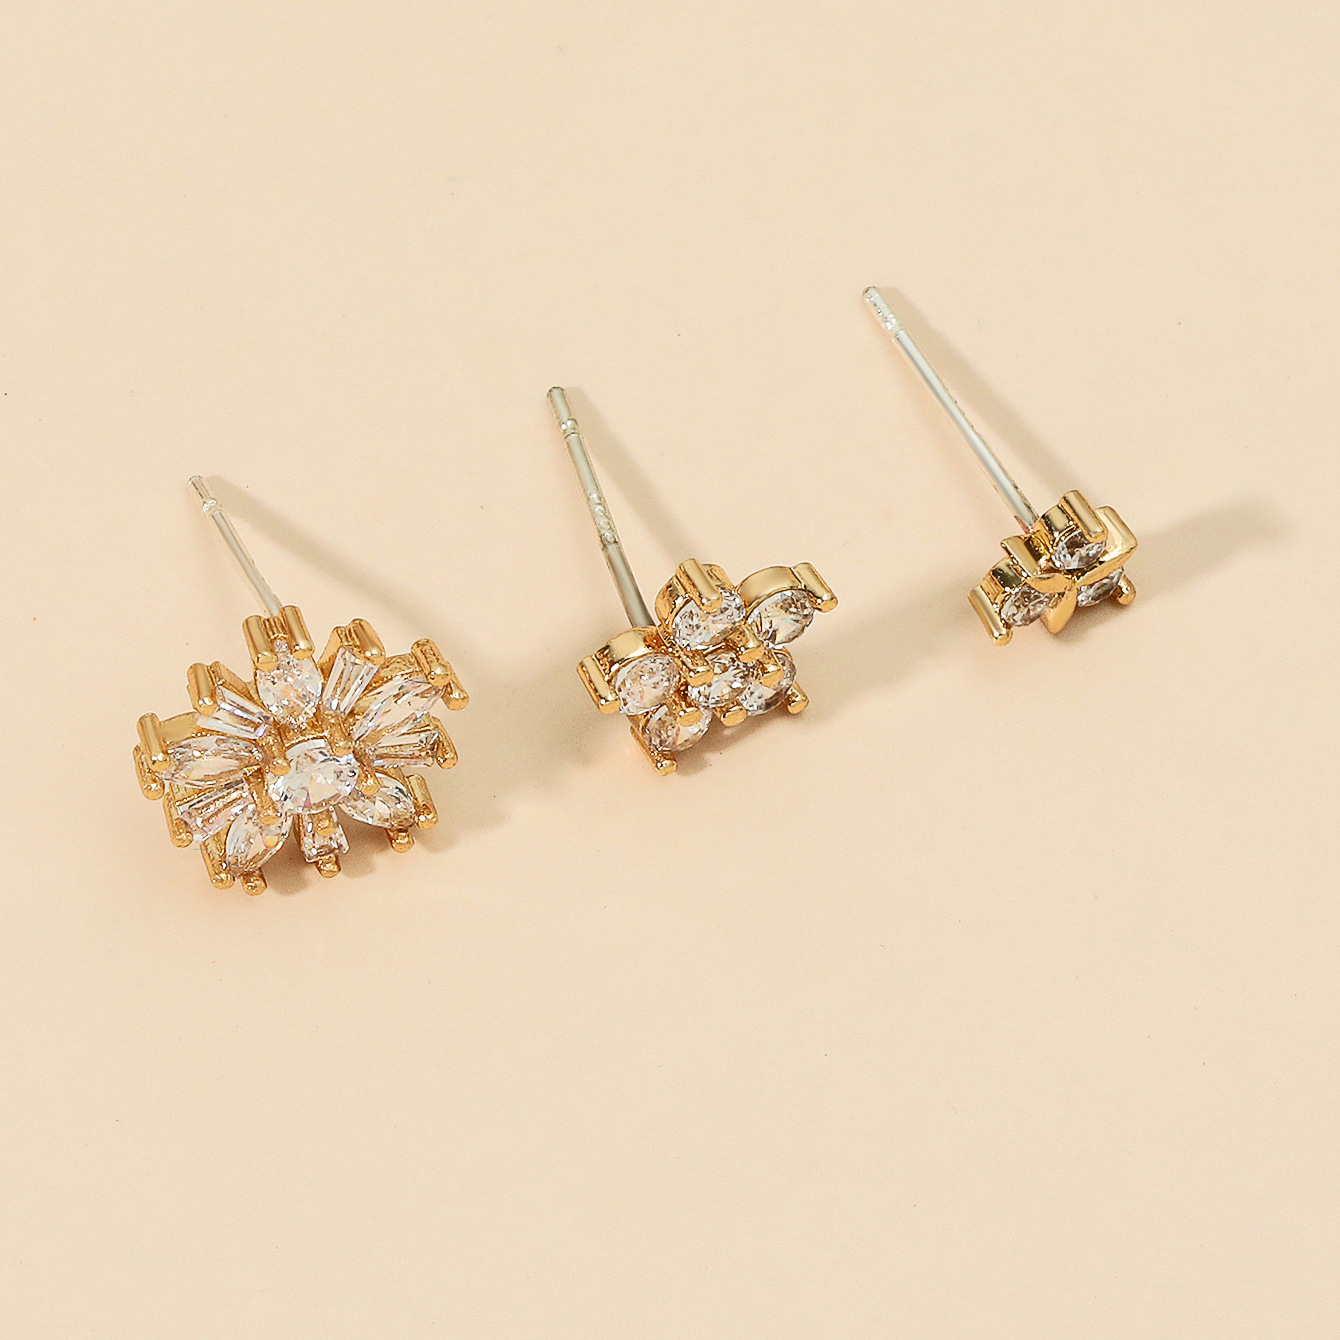 New Minimalist Star Small Diamond Ear Clip Leaf Flower SUNFLOWER Geometric Pearl Zircon Non-Piercing Earrings Set